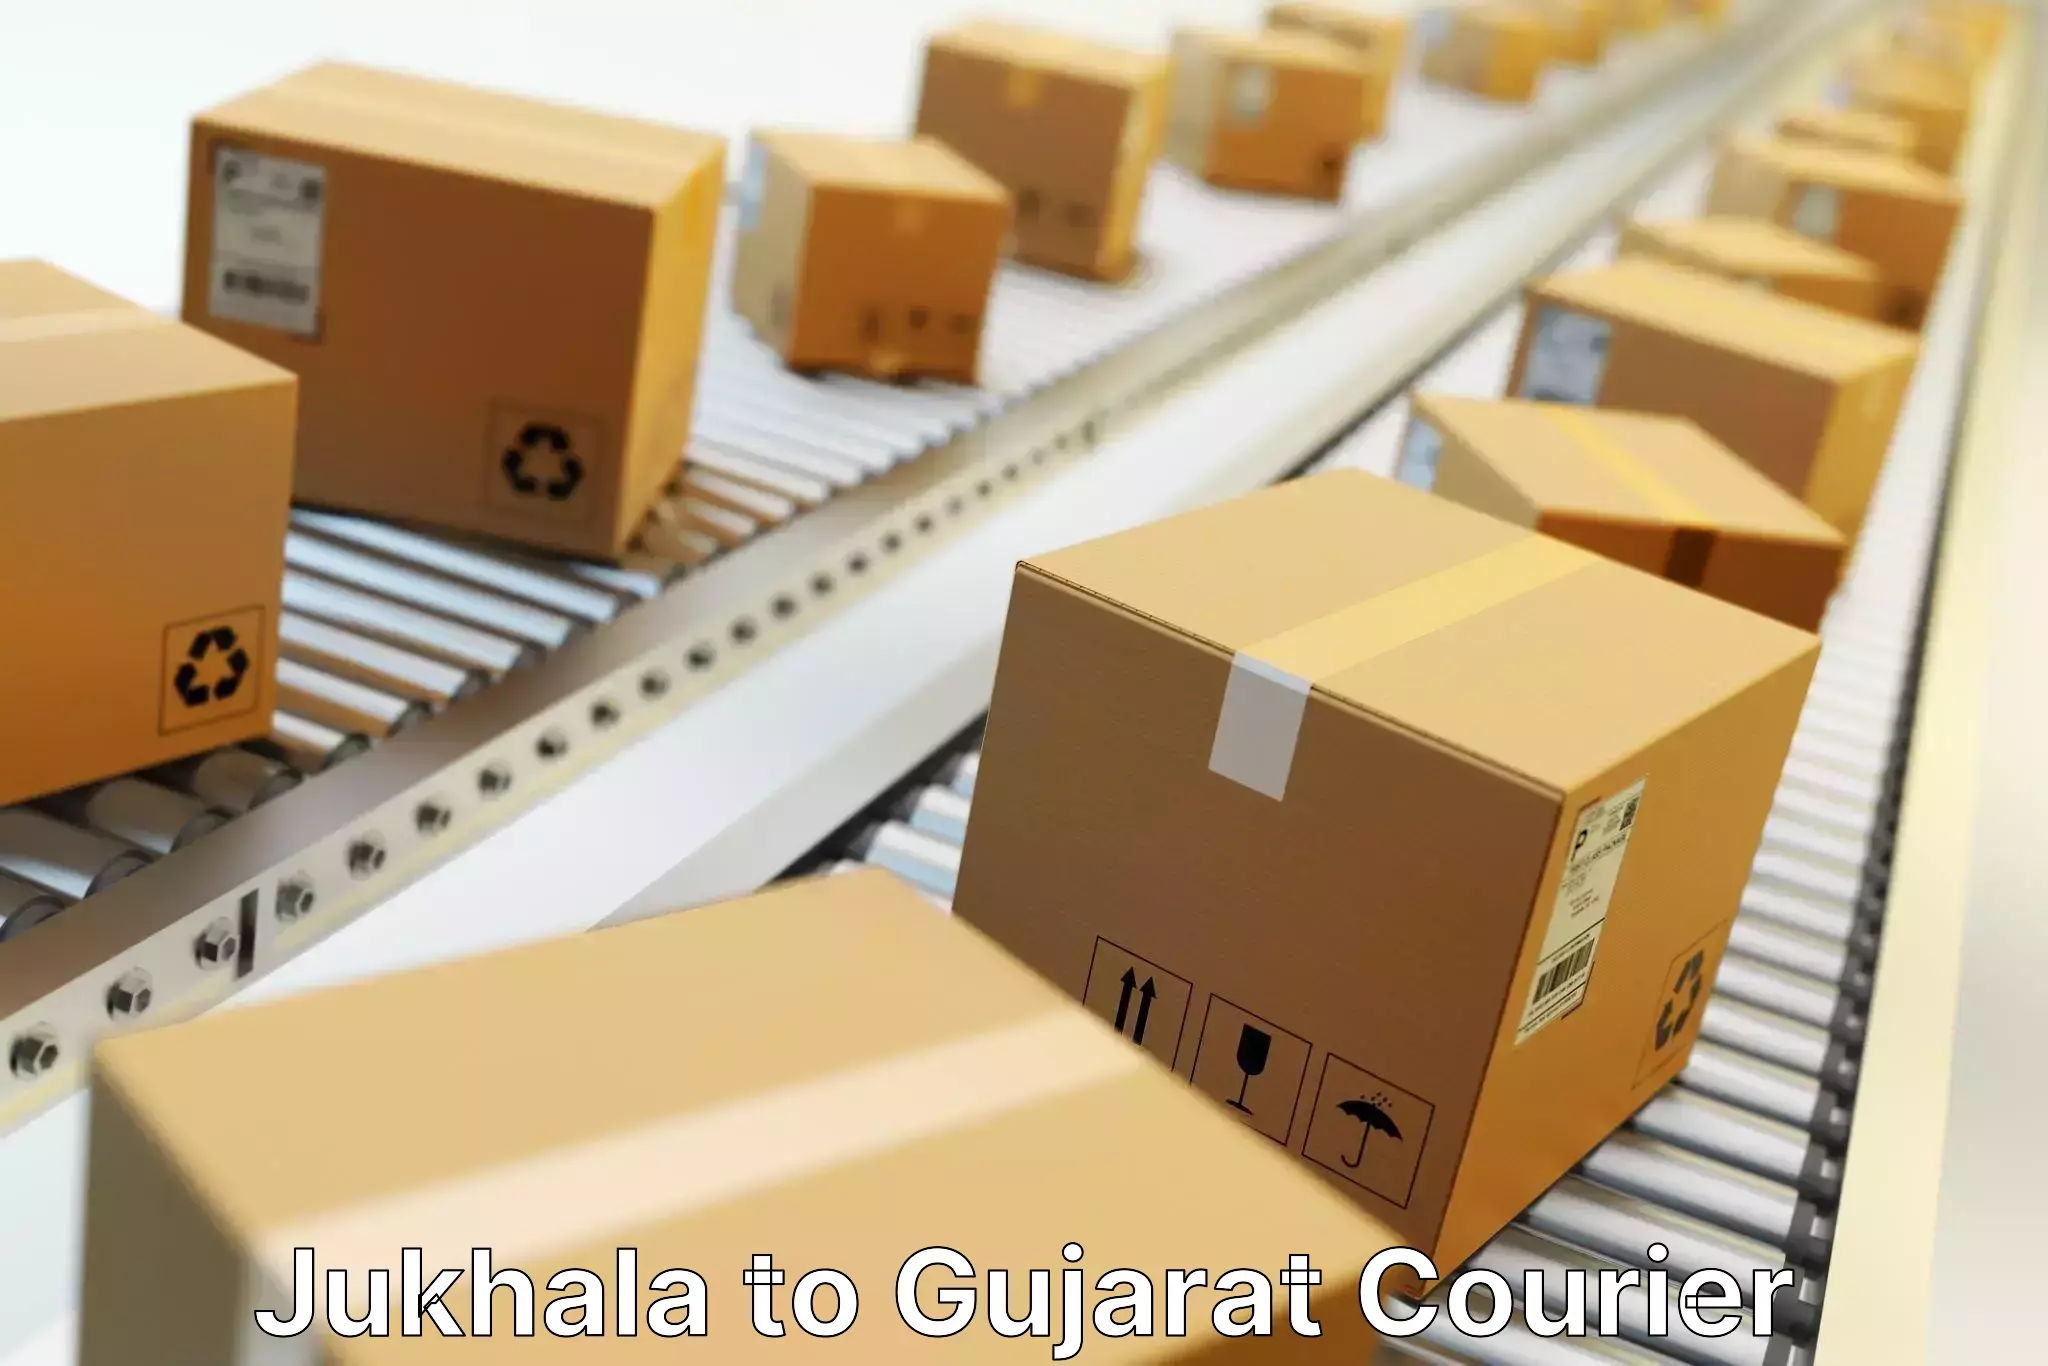 Courier service comparison Jukhala to Palanpur